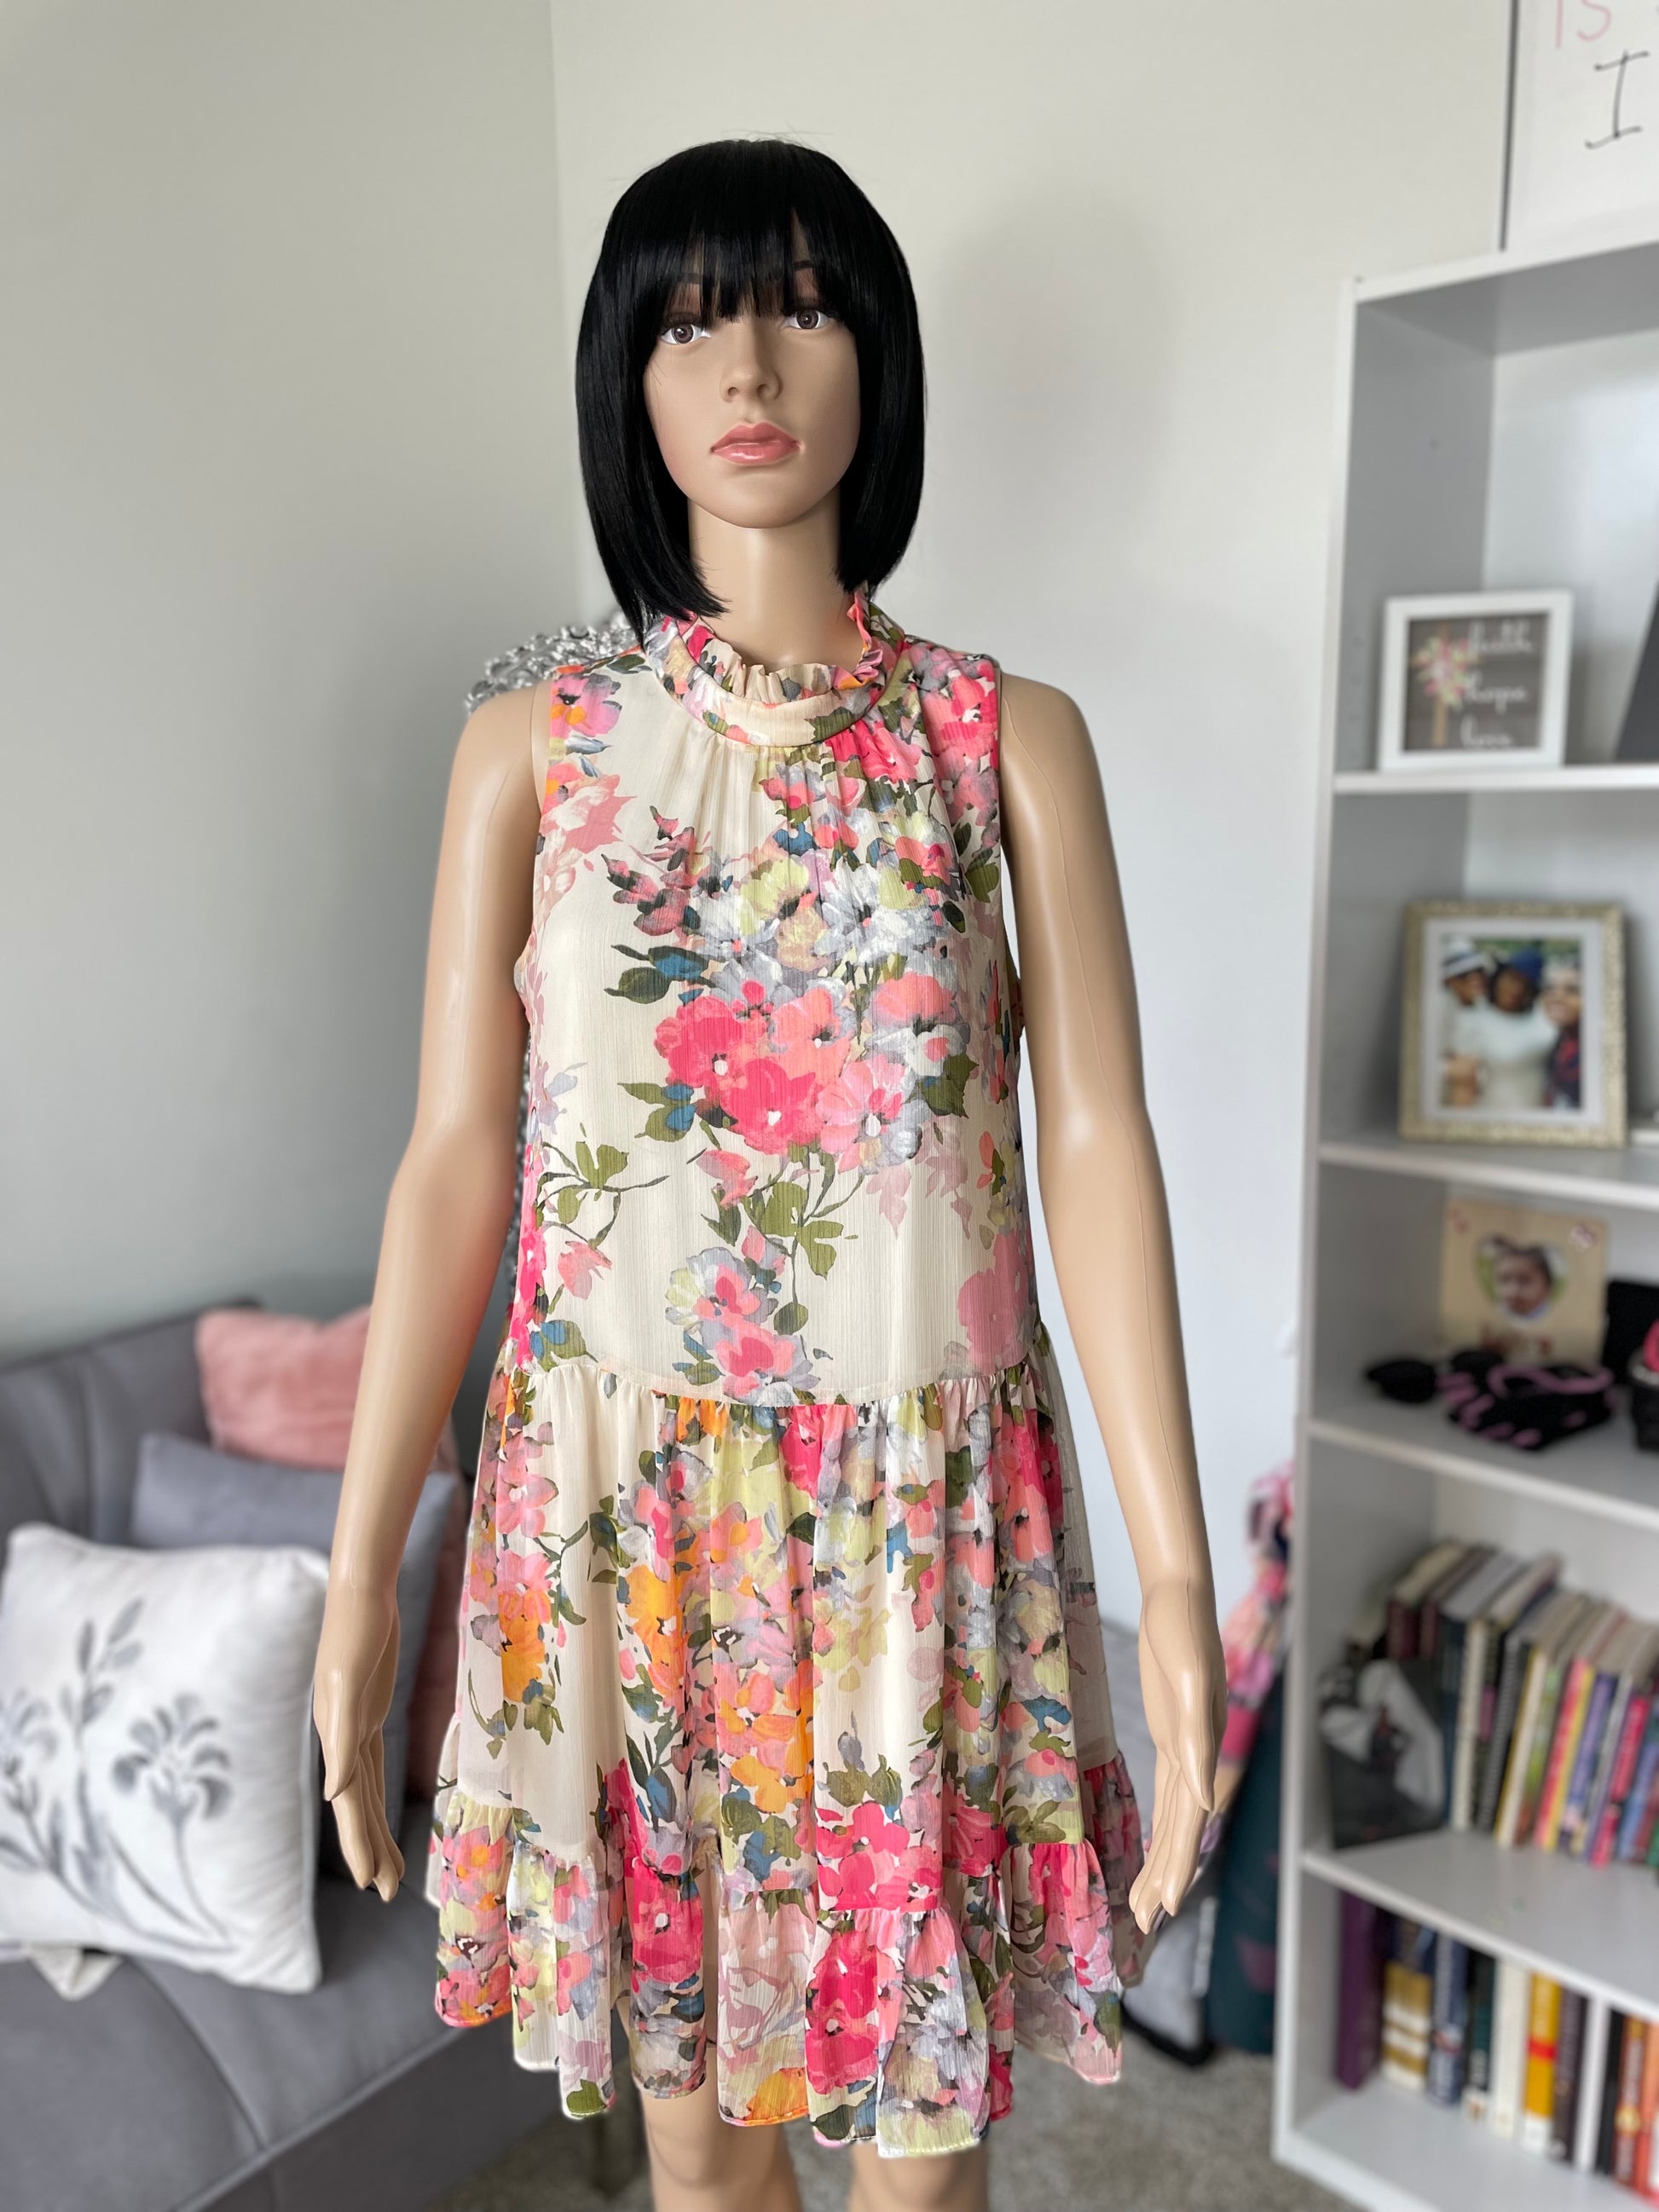 Women's floral summer dress